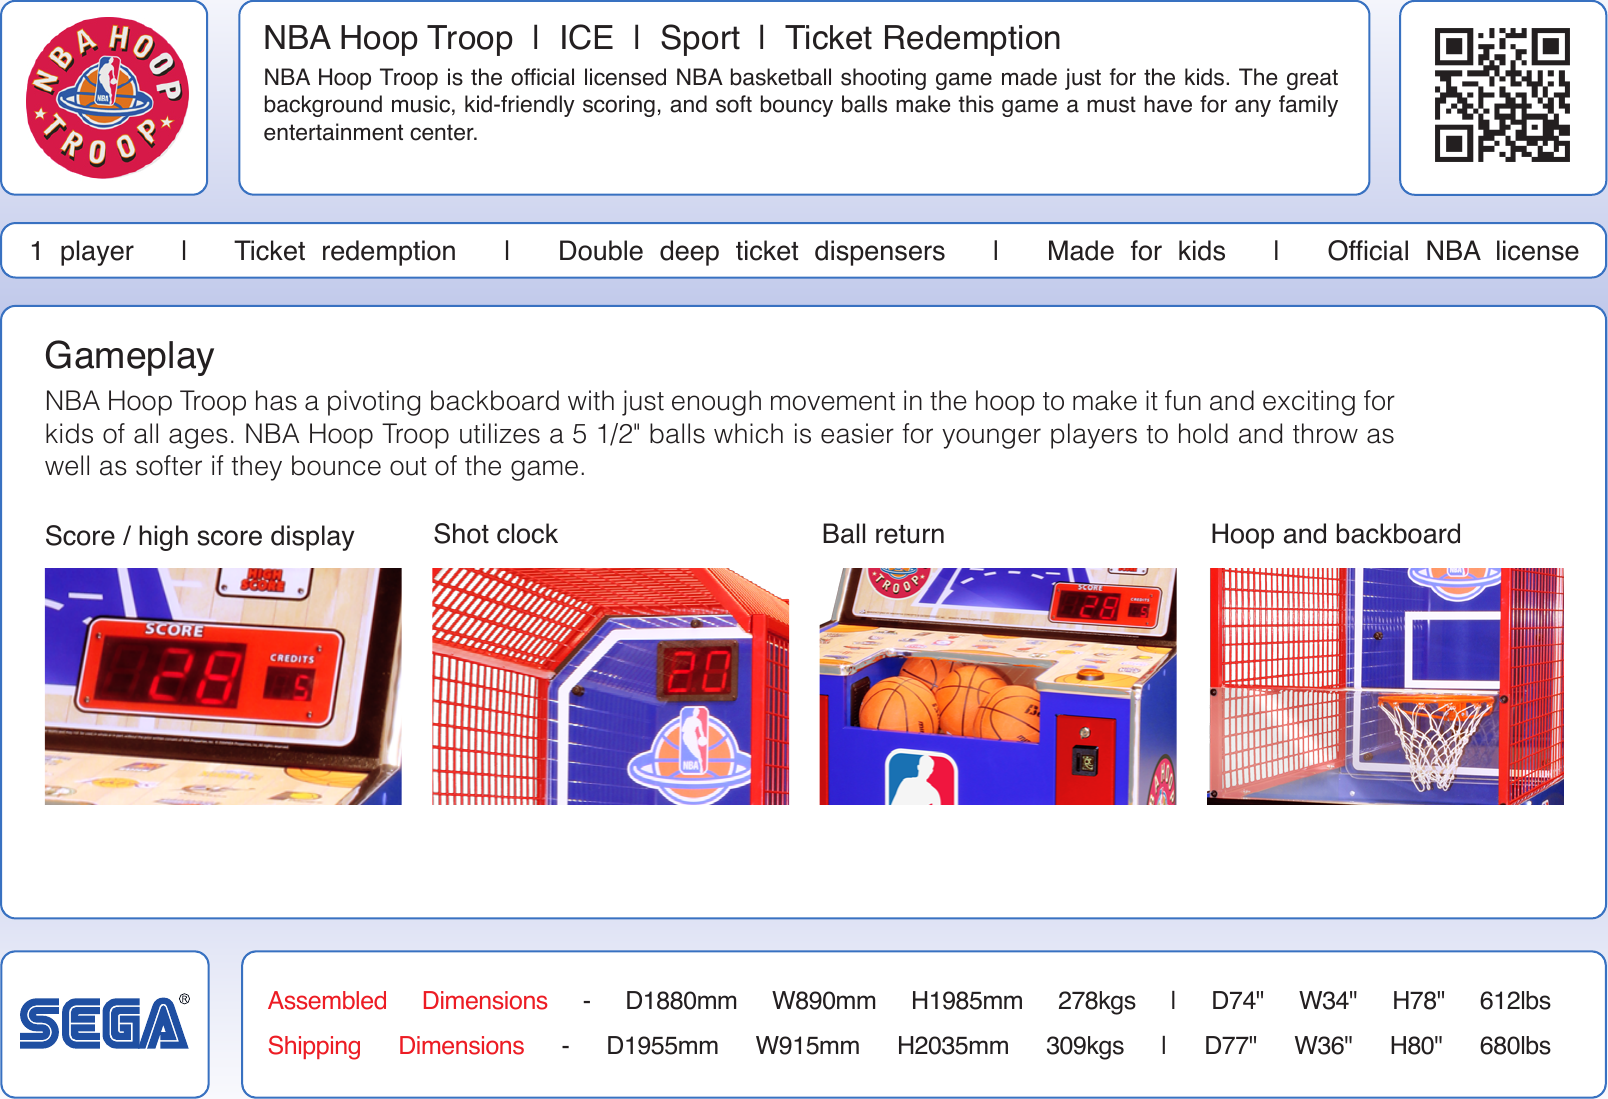 Page 2 of 2 - Arcade Nba Hoop Troop Info Sheet Copy User Manual